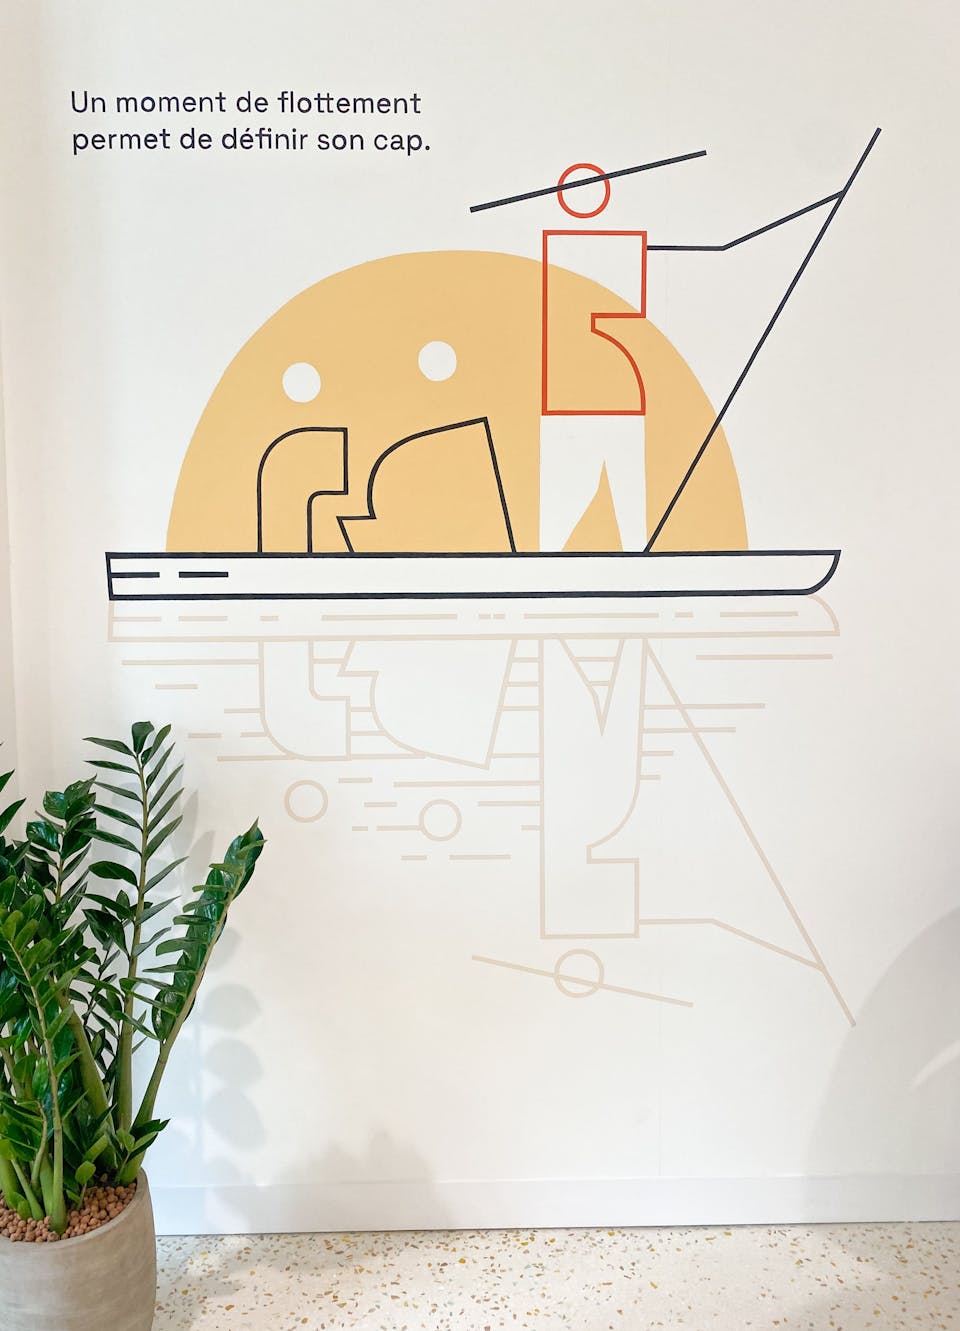 Une illustration filaire symbolisant des personnages voguant sur l'eau à l'aide d'une barque, apposée par sticker dans le cadre de l'aménagement de la Maison de l'Entreprise à Saint-Nazaire par l'agence de design Studio Katra.